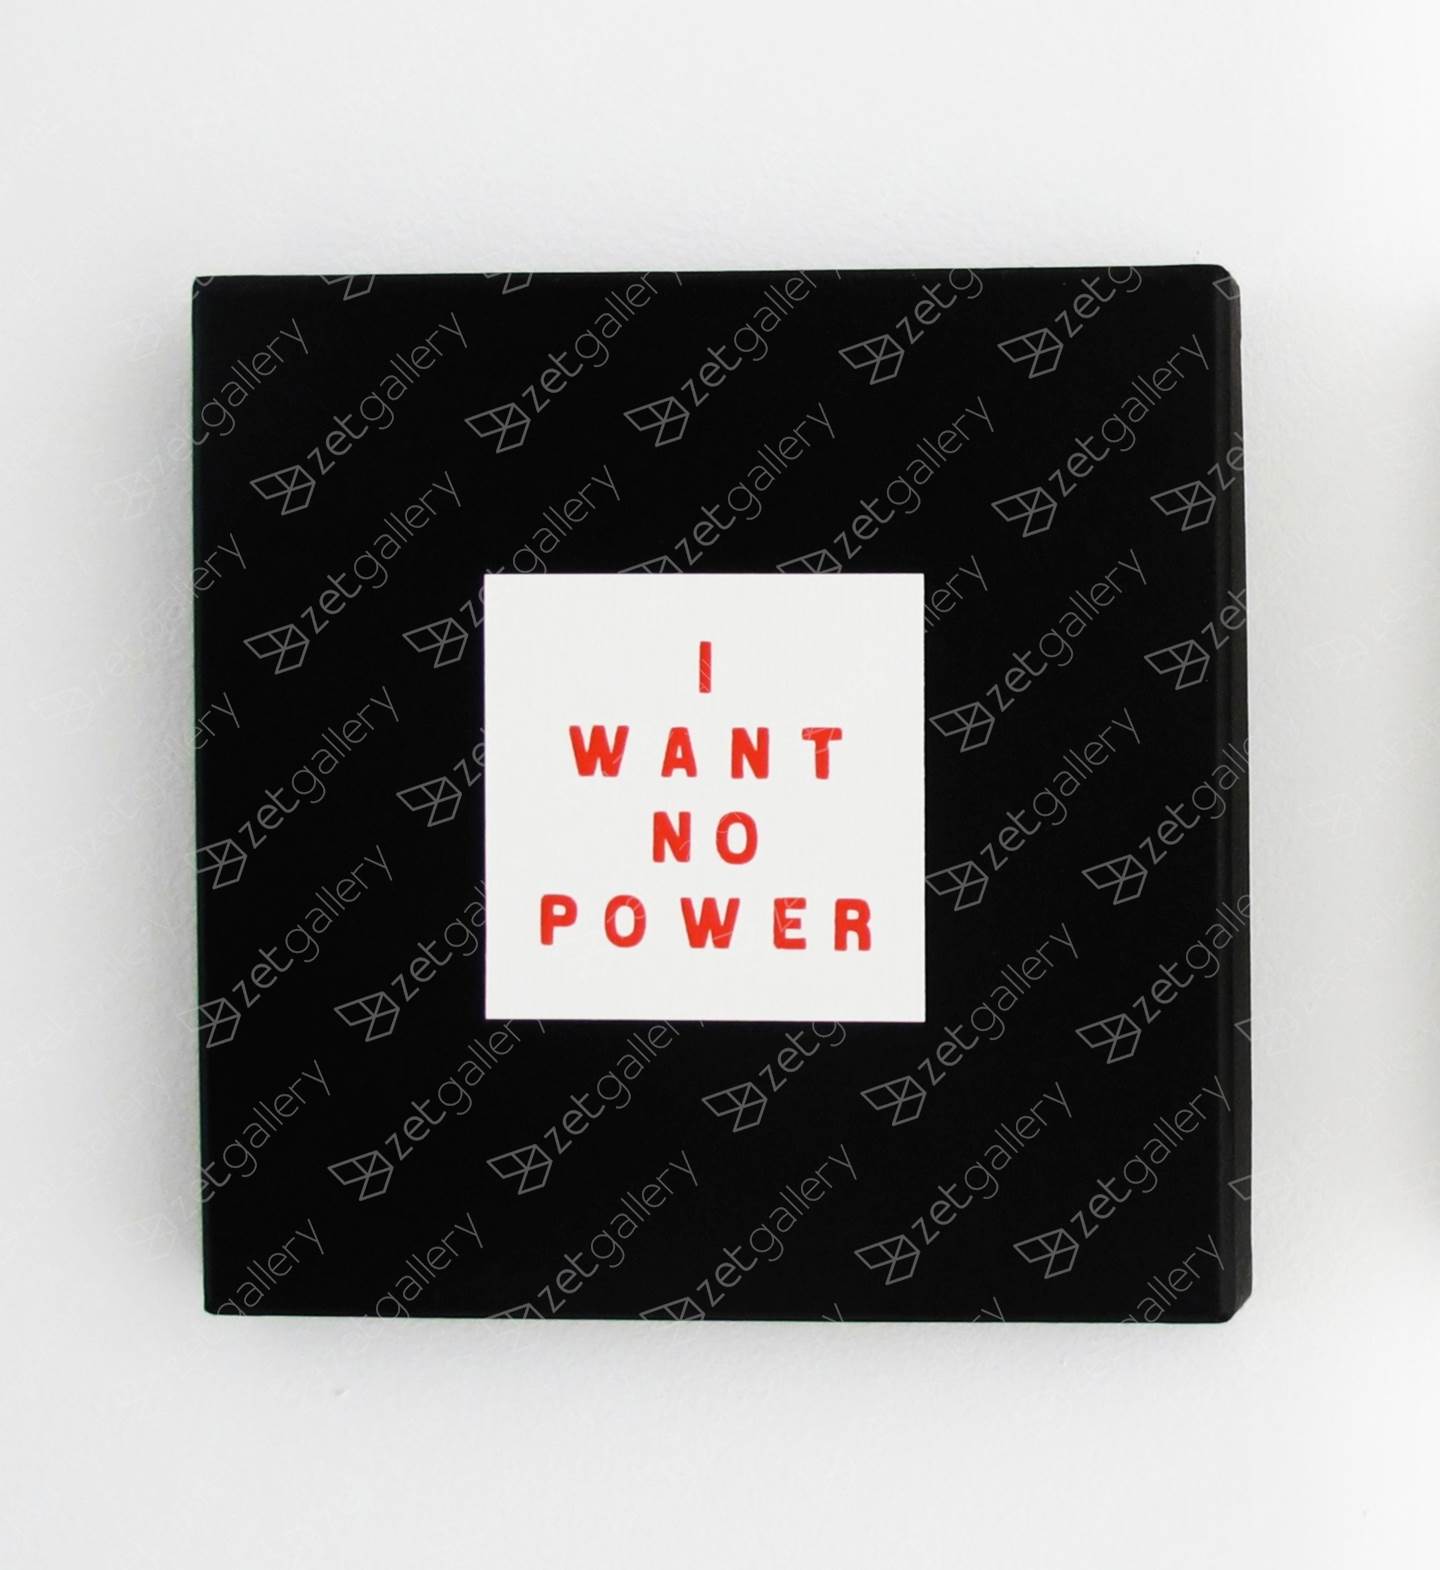 I want no power #7, original Body Digital Photography by Andrea Inocêncio